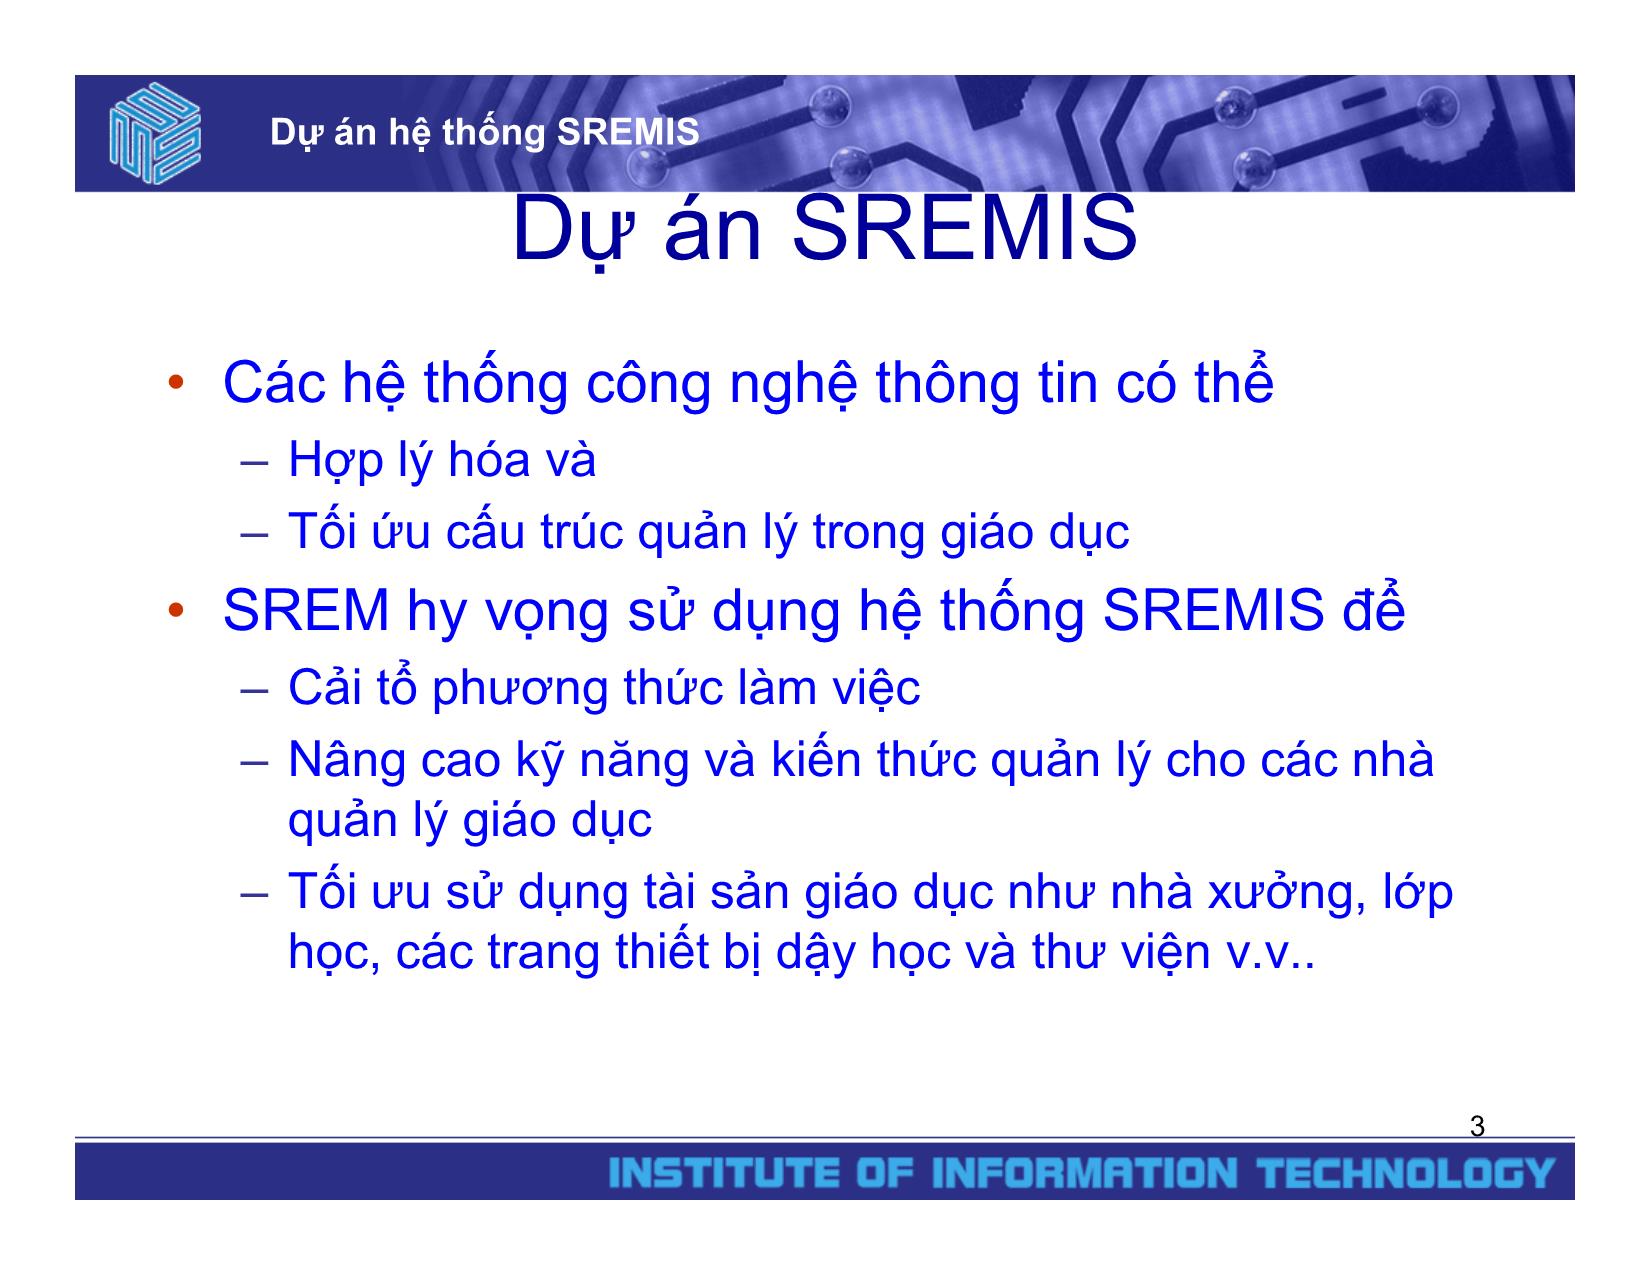 Dự án hệ thống SREMIS trang 3